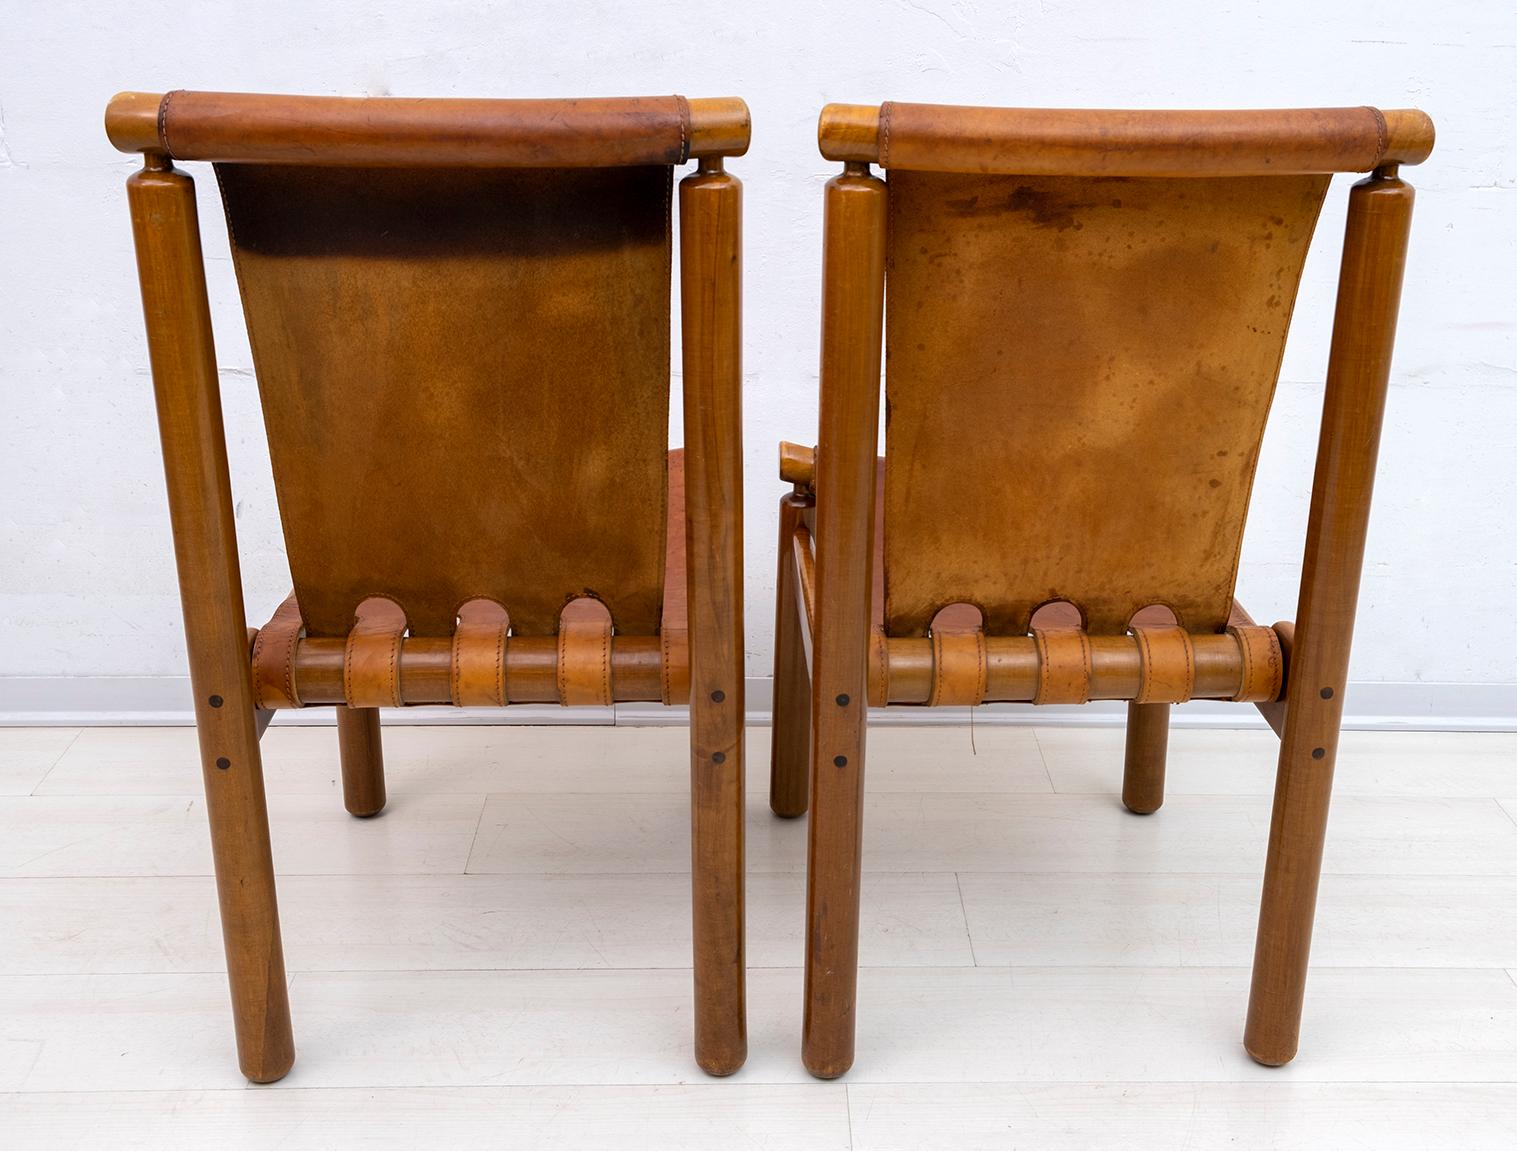 Llmari Tapiovaara Mid-Century Modern Italian Leather Dining Chairs 50s, Pair 1